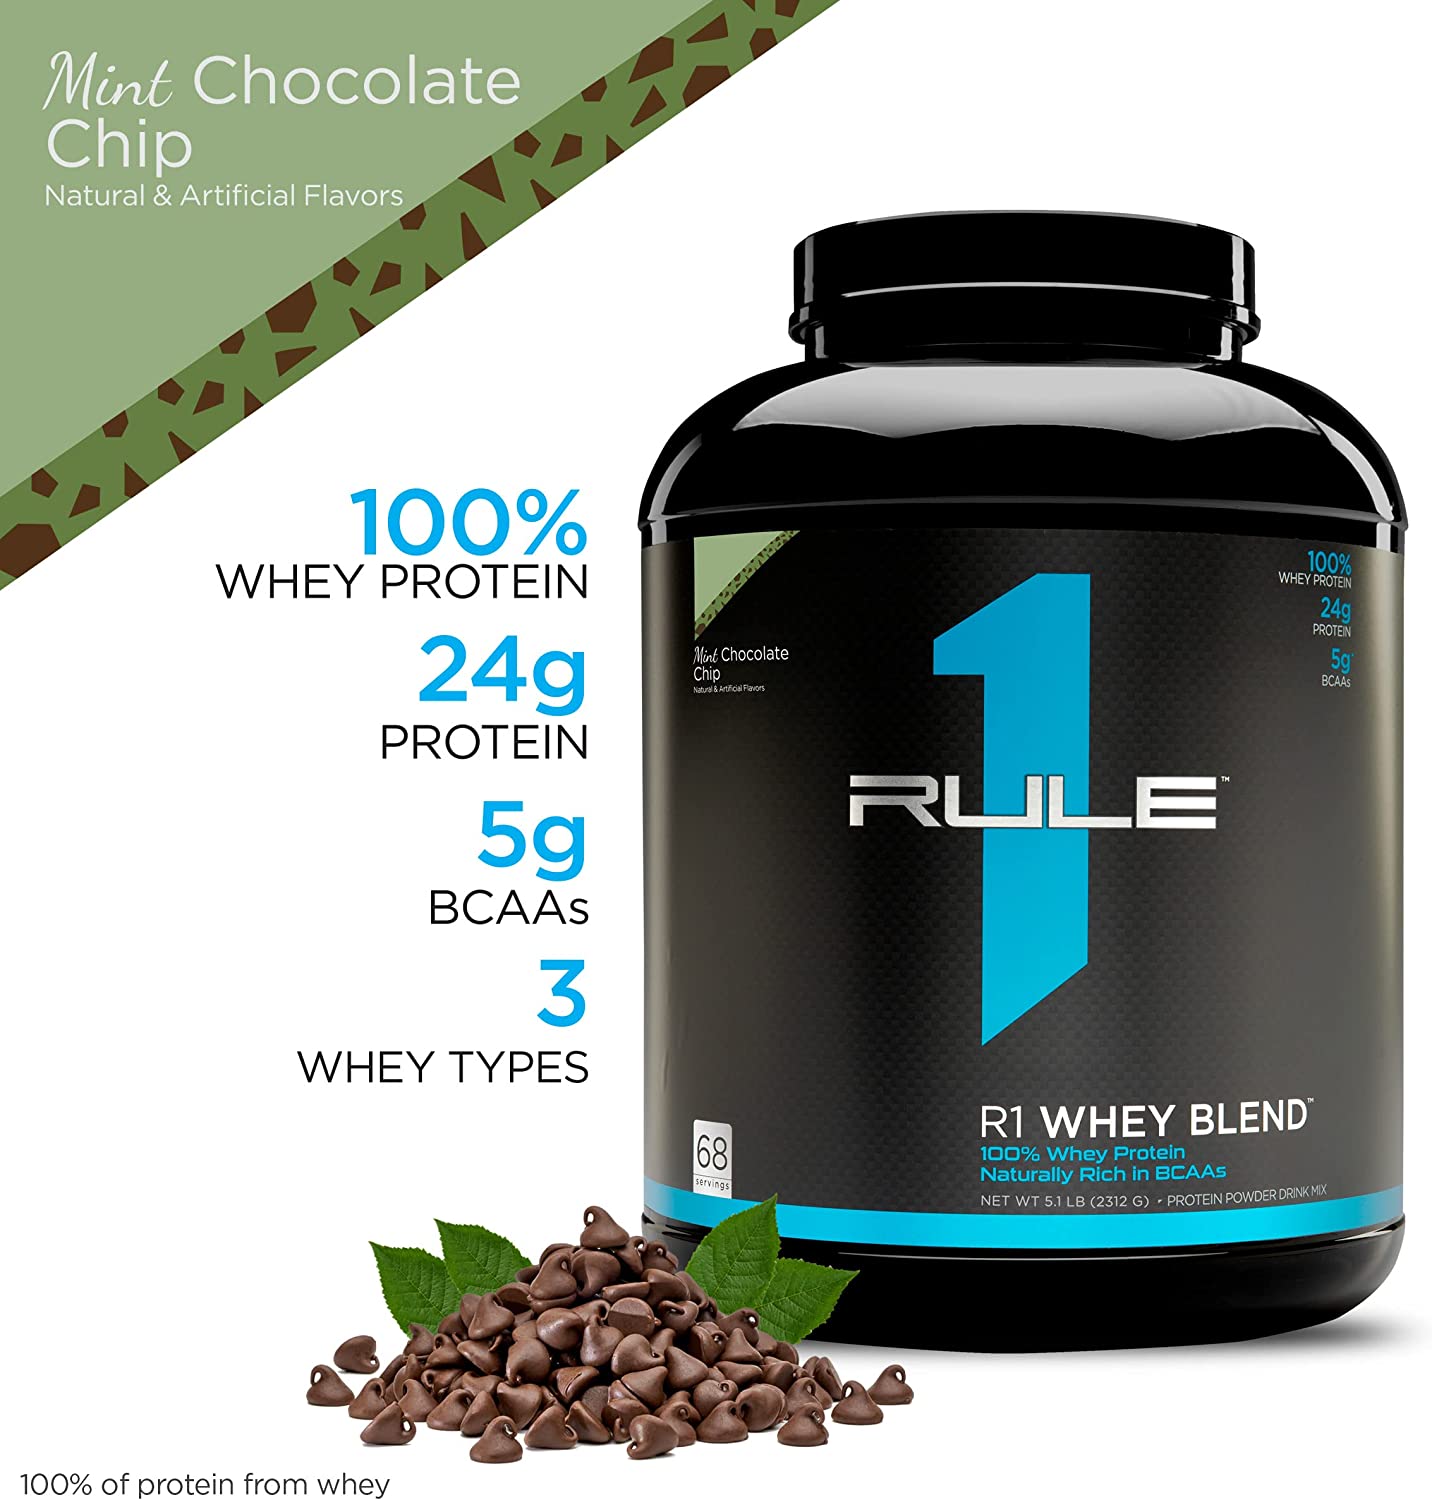 Whey Protein Rule 1 Blend 5lbs - Sữa tăng cơ bổ sung Protein cho người tập gym - R1 Whey 2.5kg